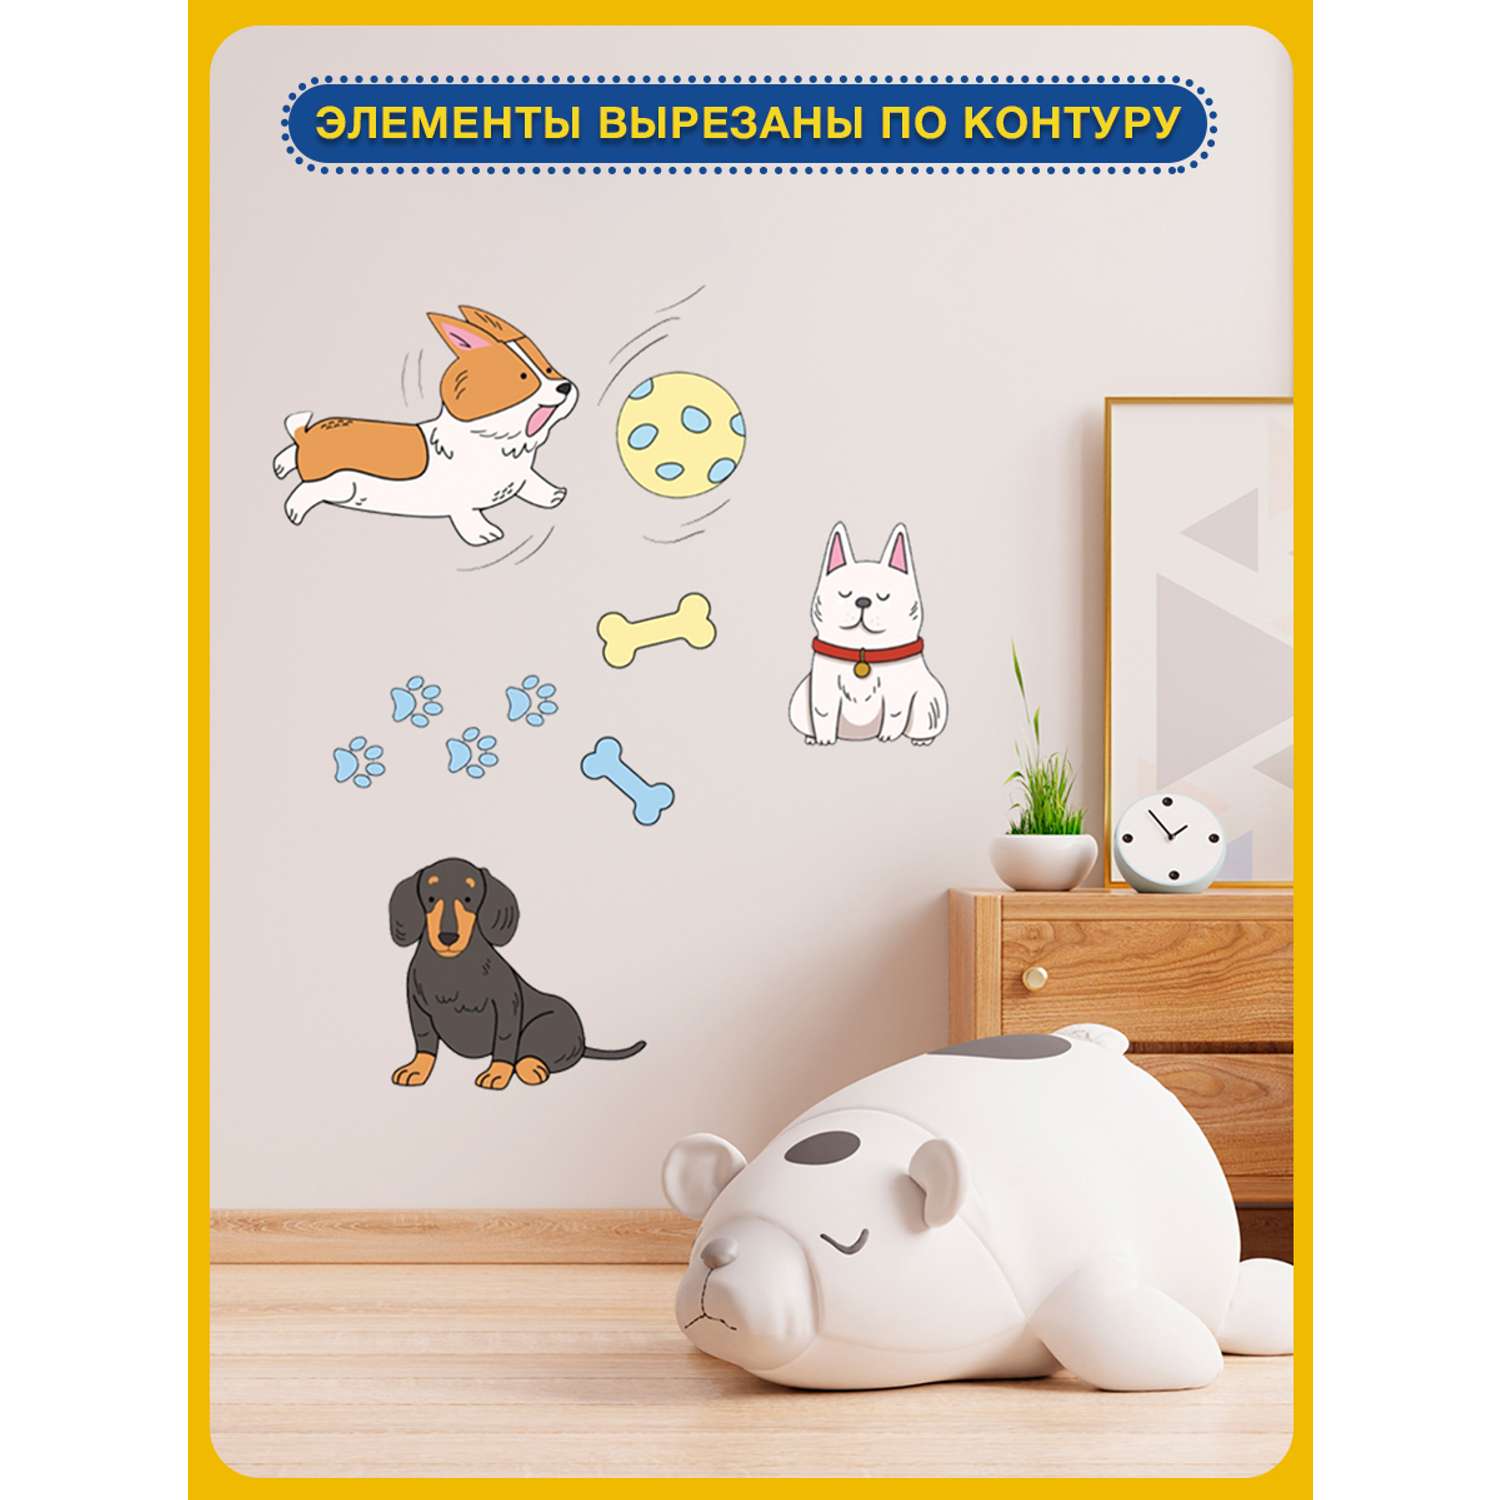 Наклейка оформительская ГК Горчаков на стену в детскую комнату с рисунком собачки для декора - фото 6